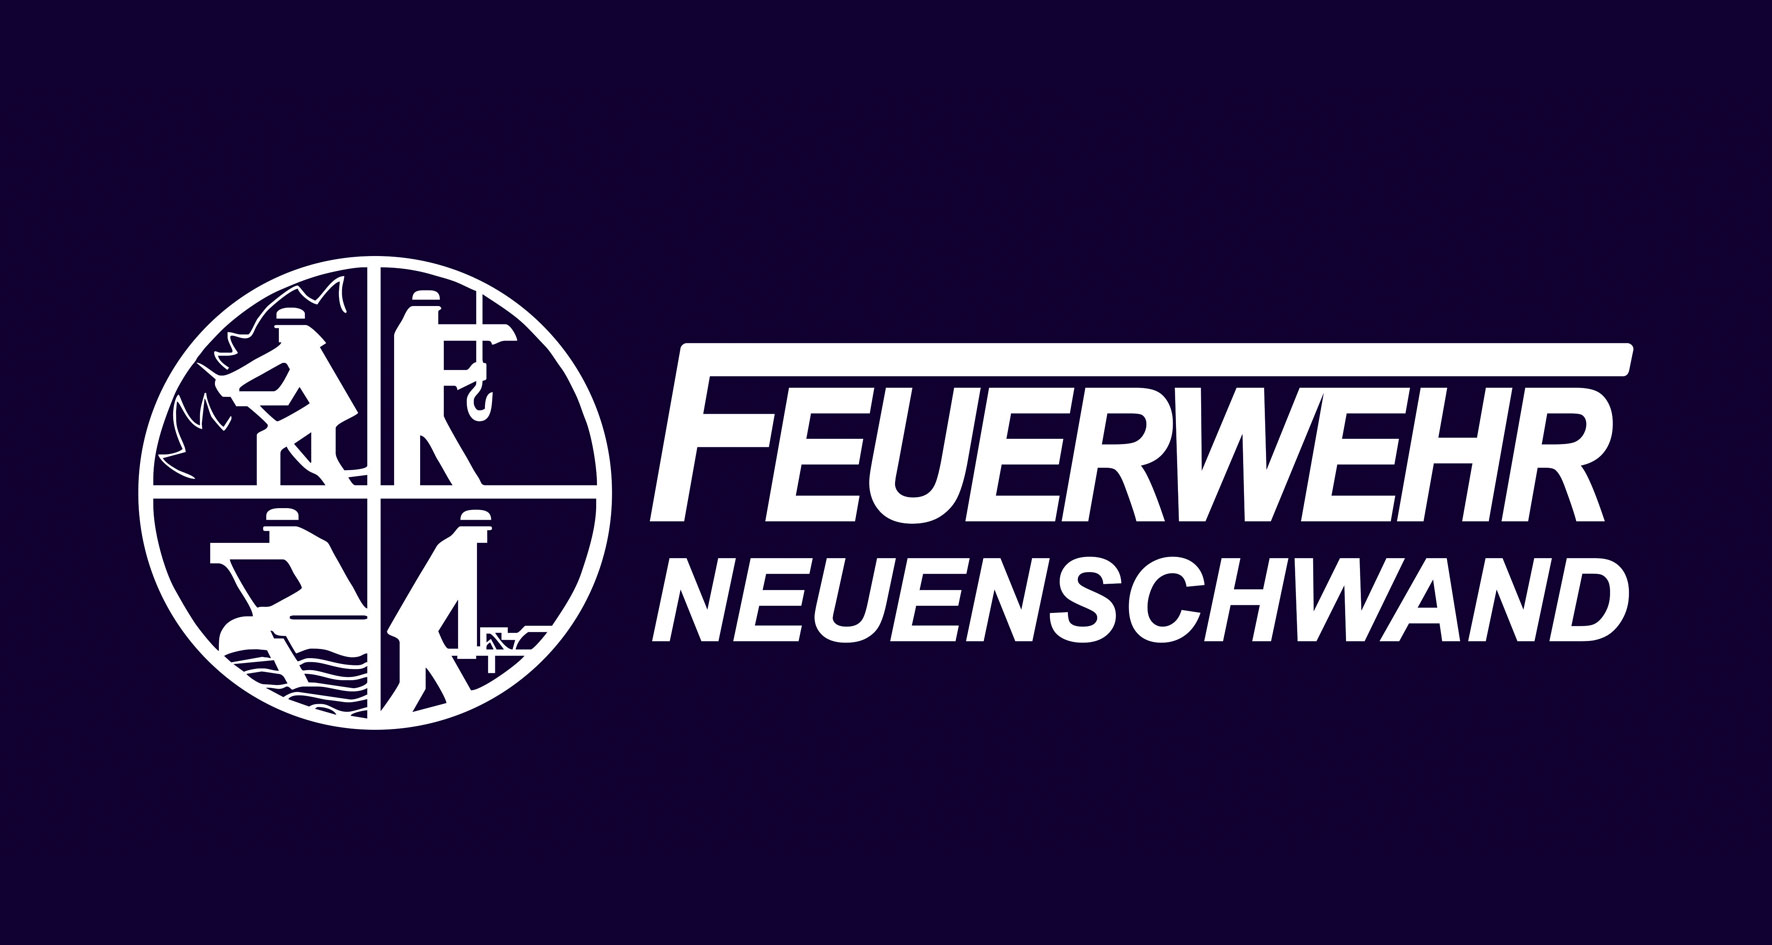 FF Neuenschwand